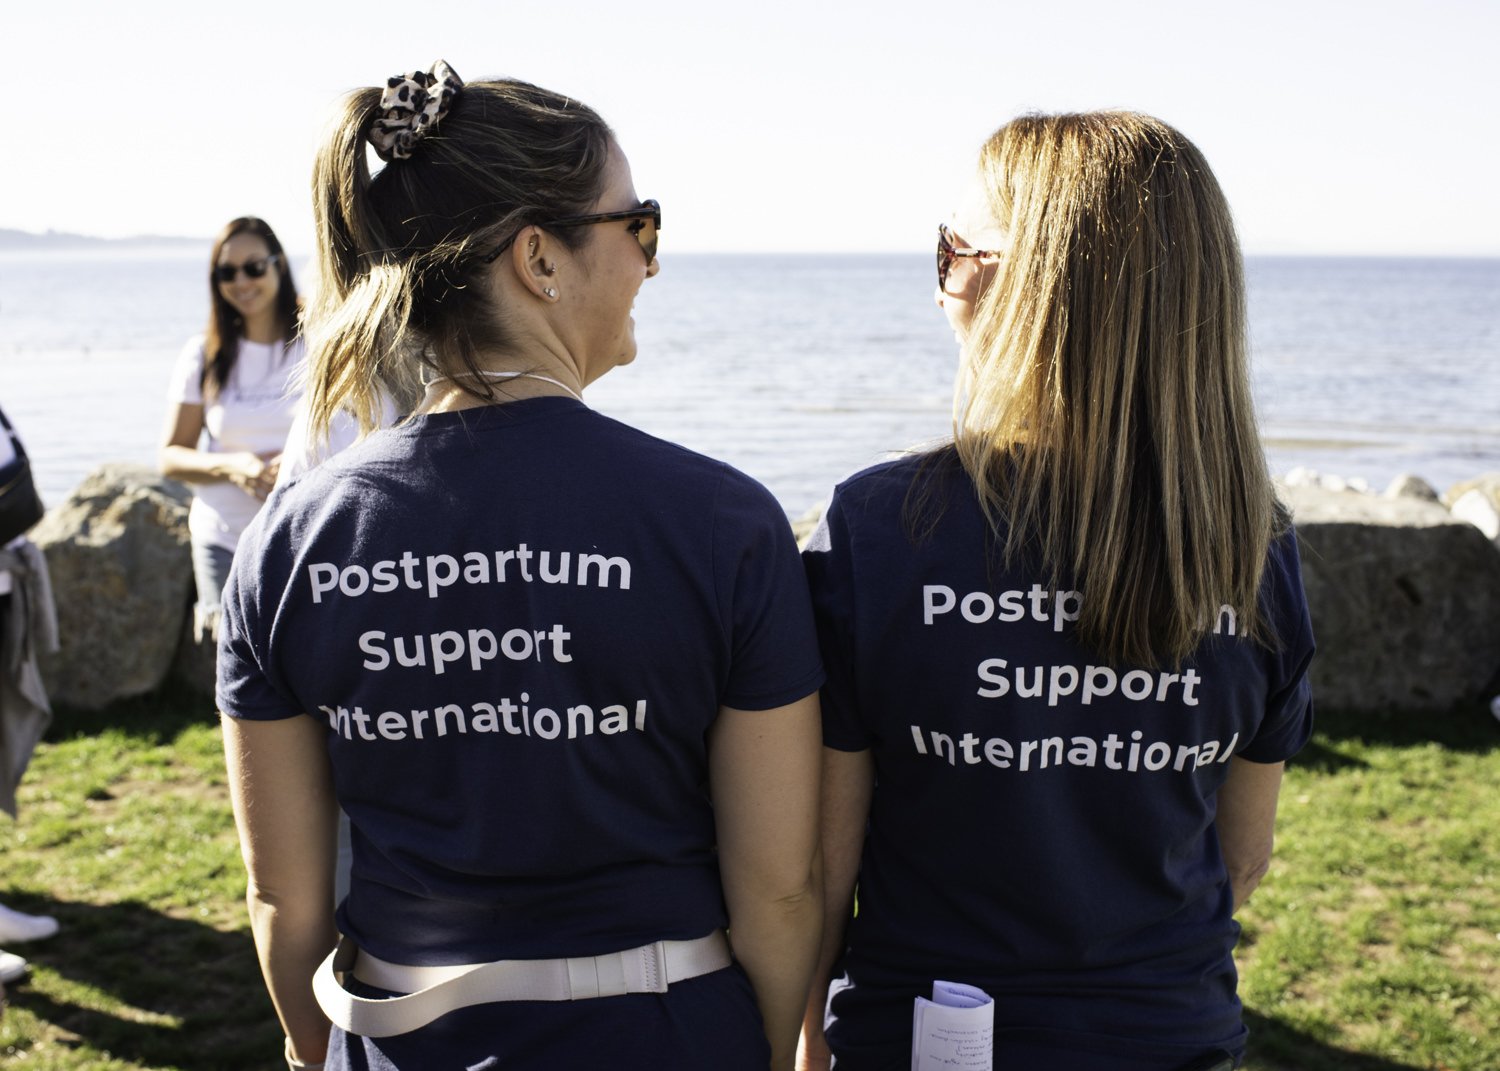 Postpartum Support Community Walk White Rock Pier